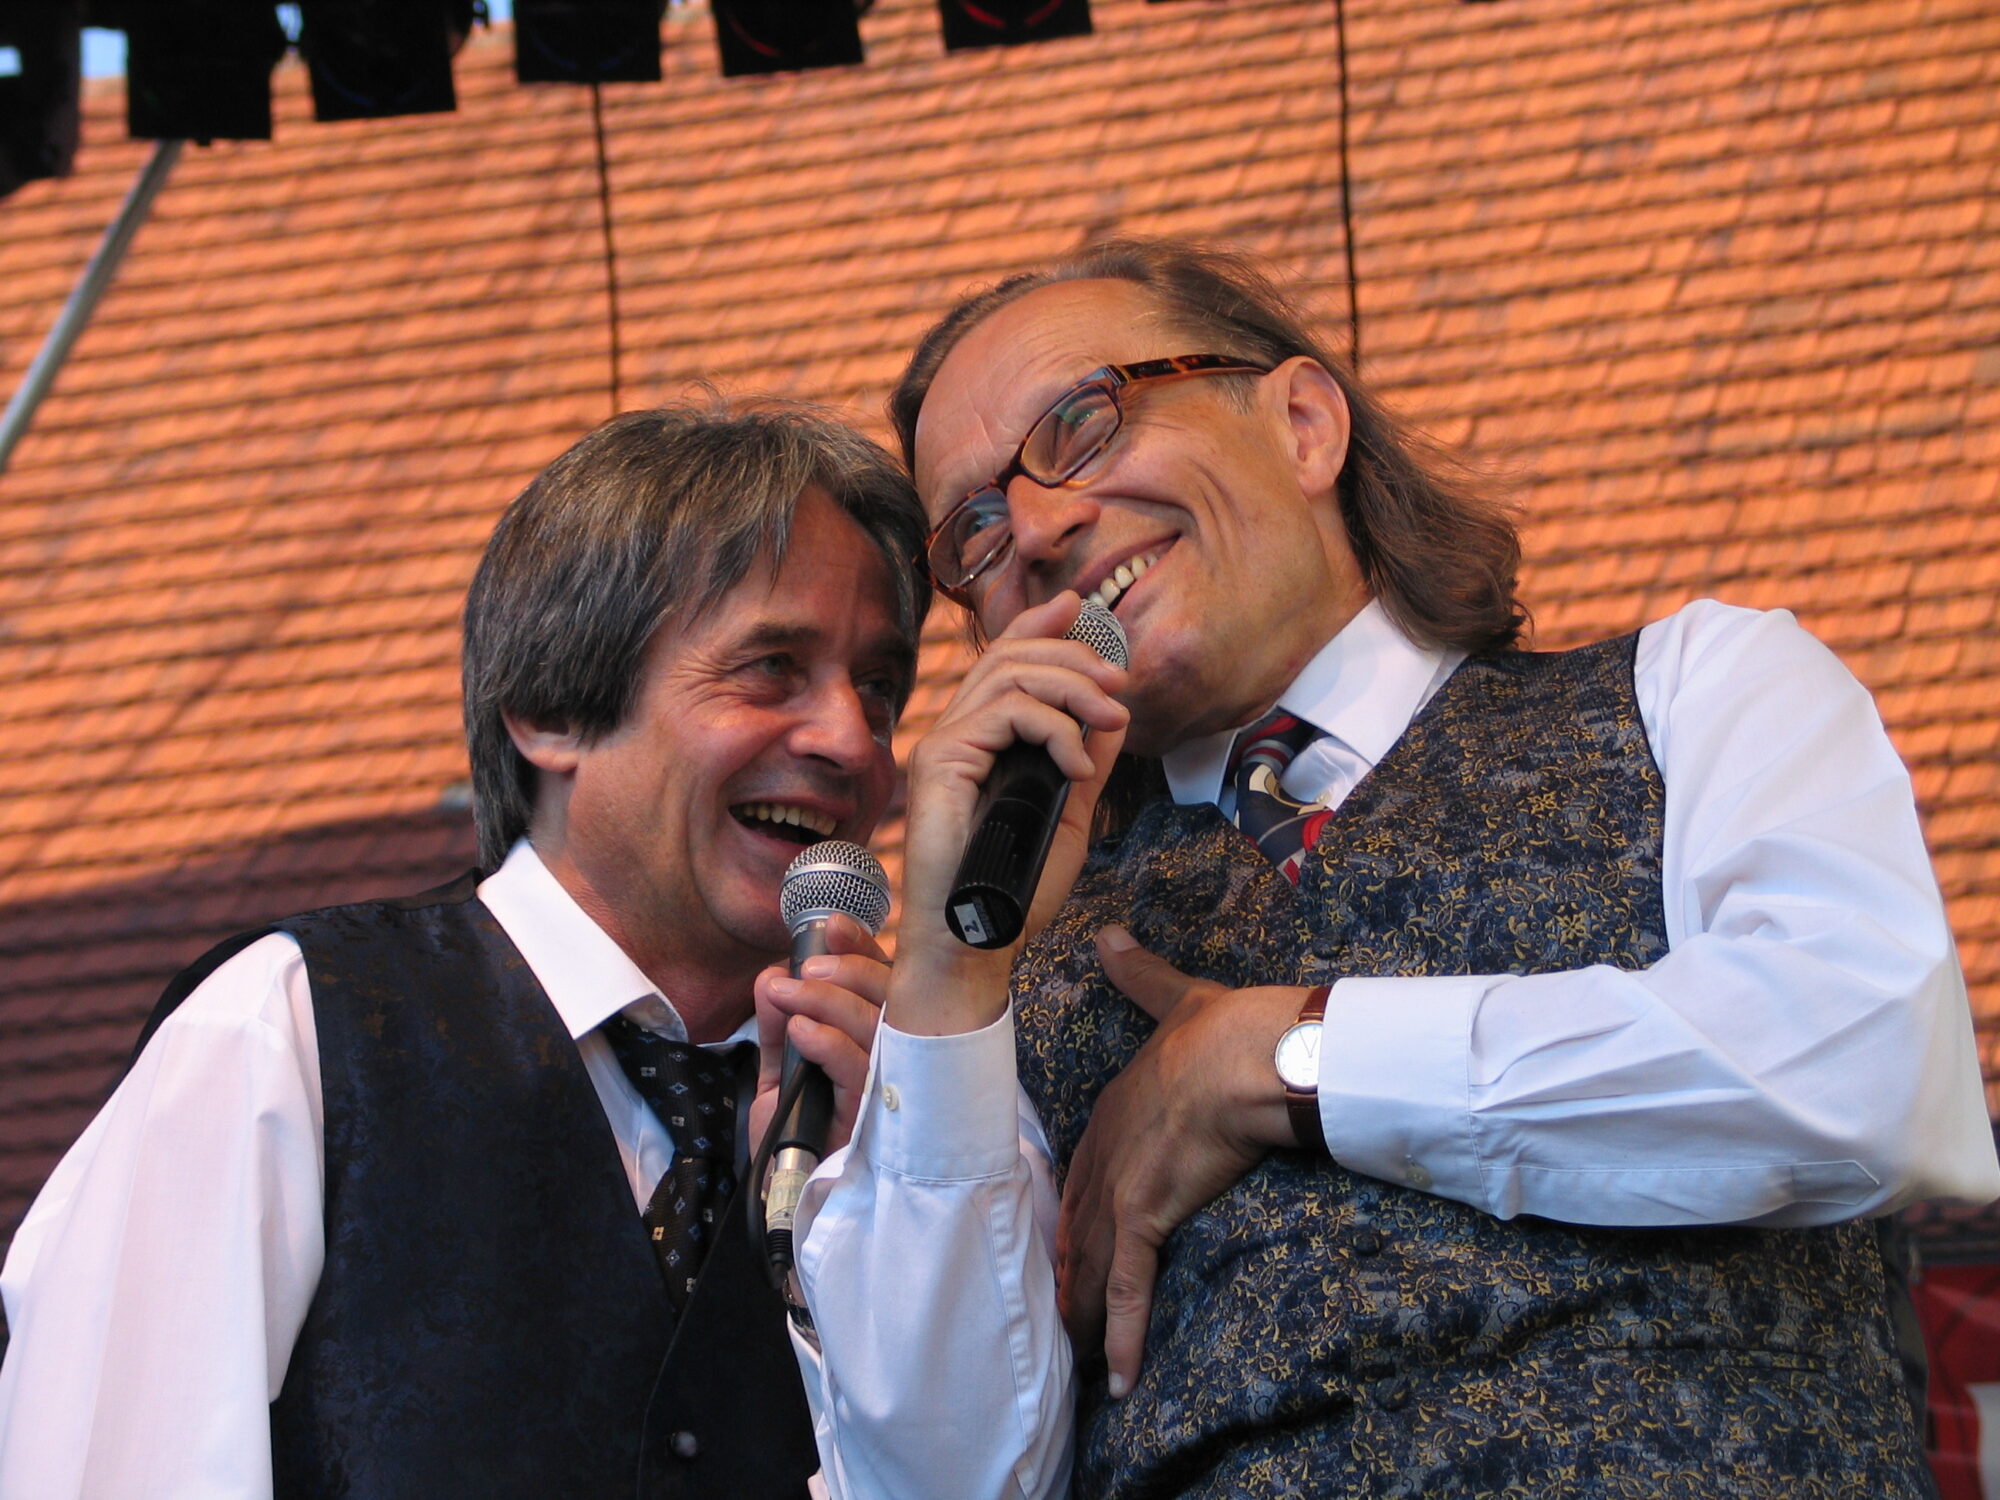 Zdjęcie przedstawia uśmiechniętych Ecika i Masztalskiego podczas występu przed publicznością